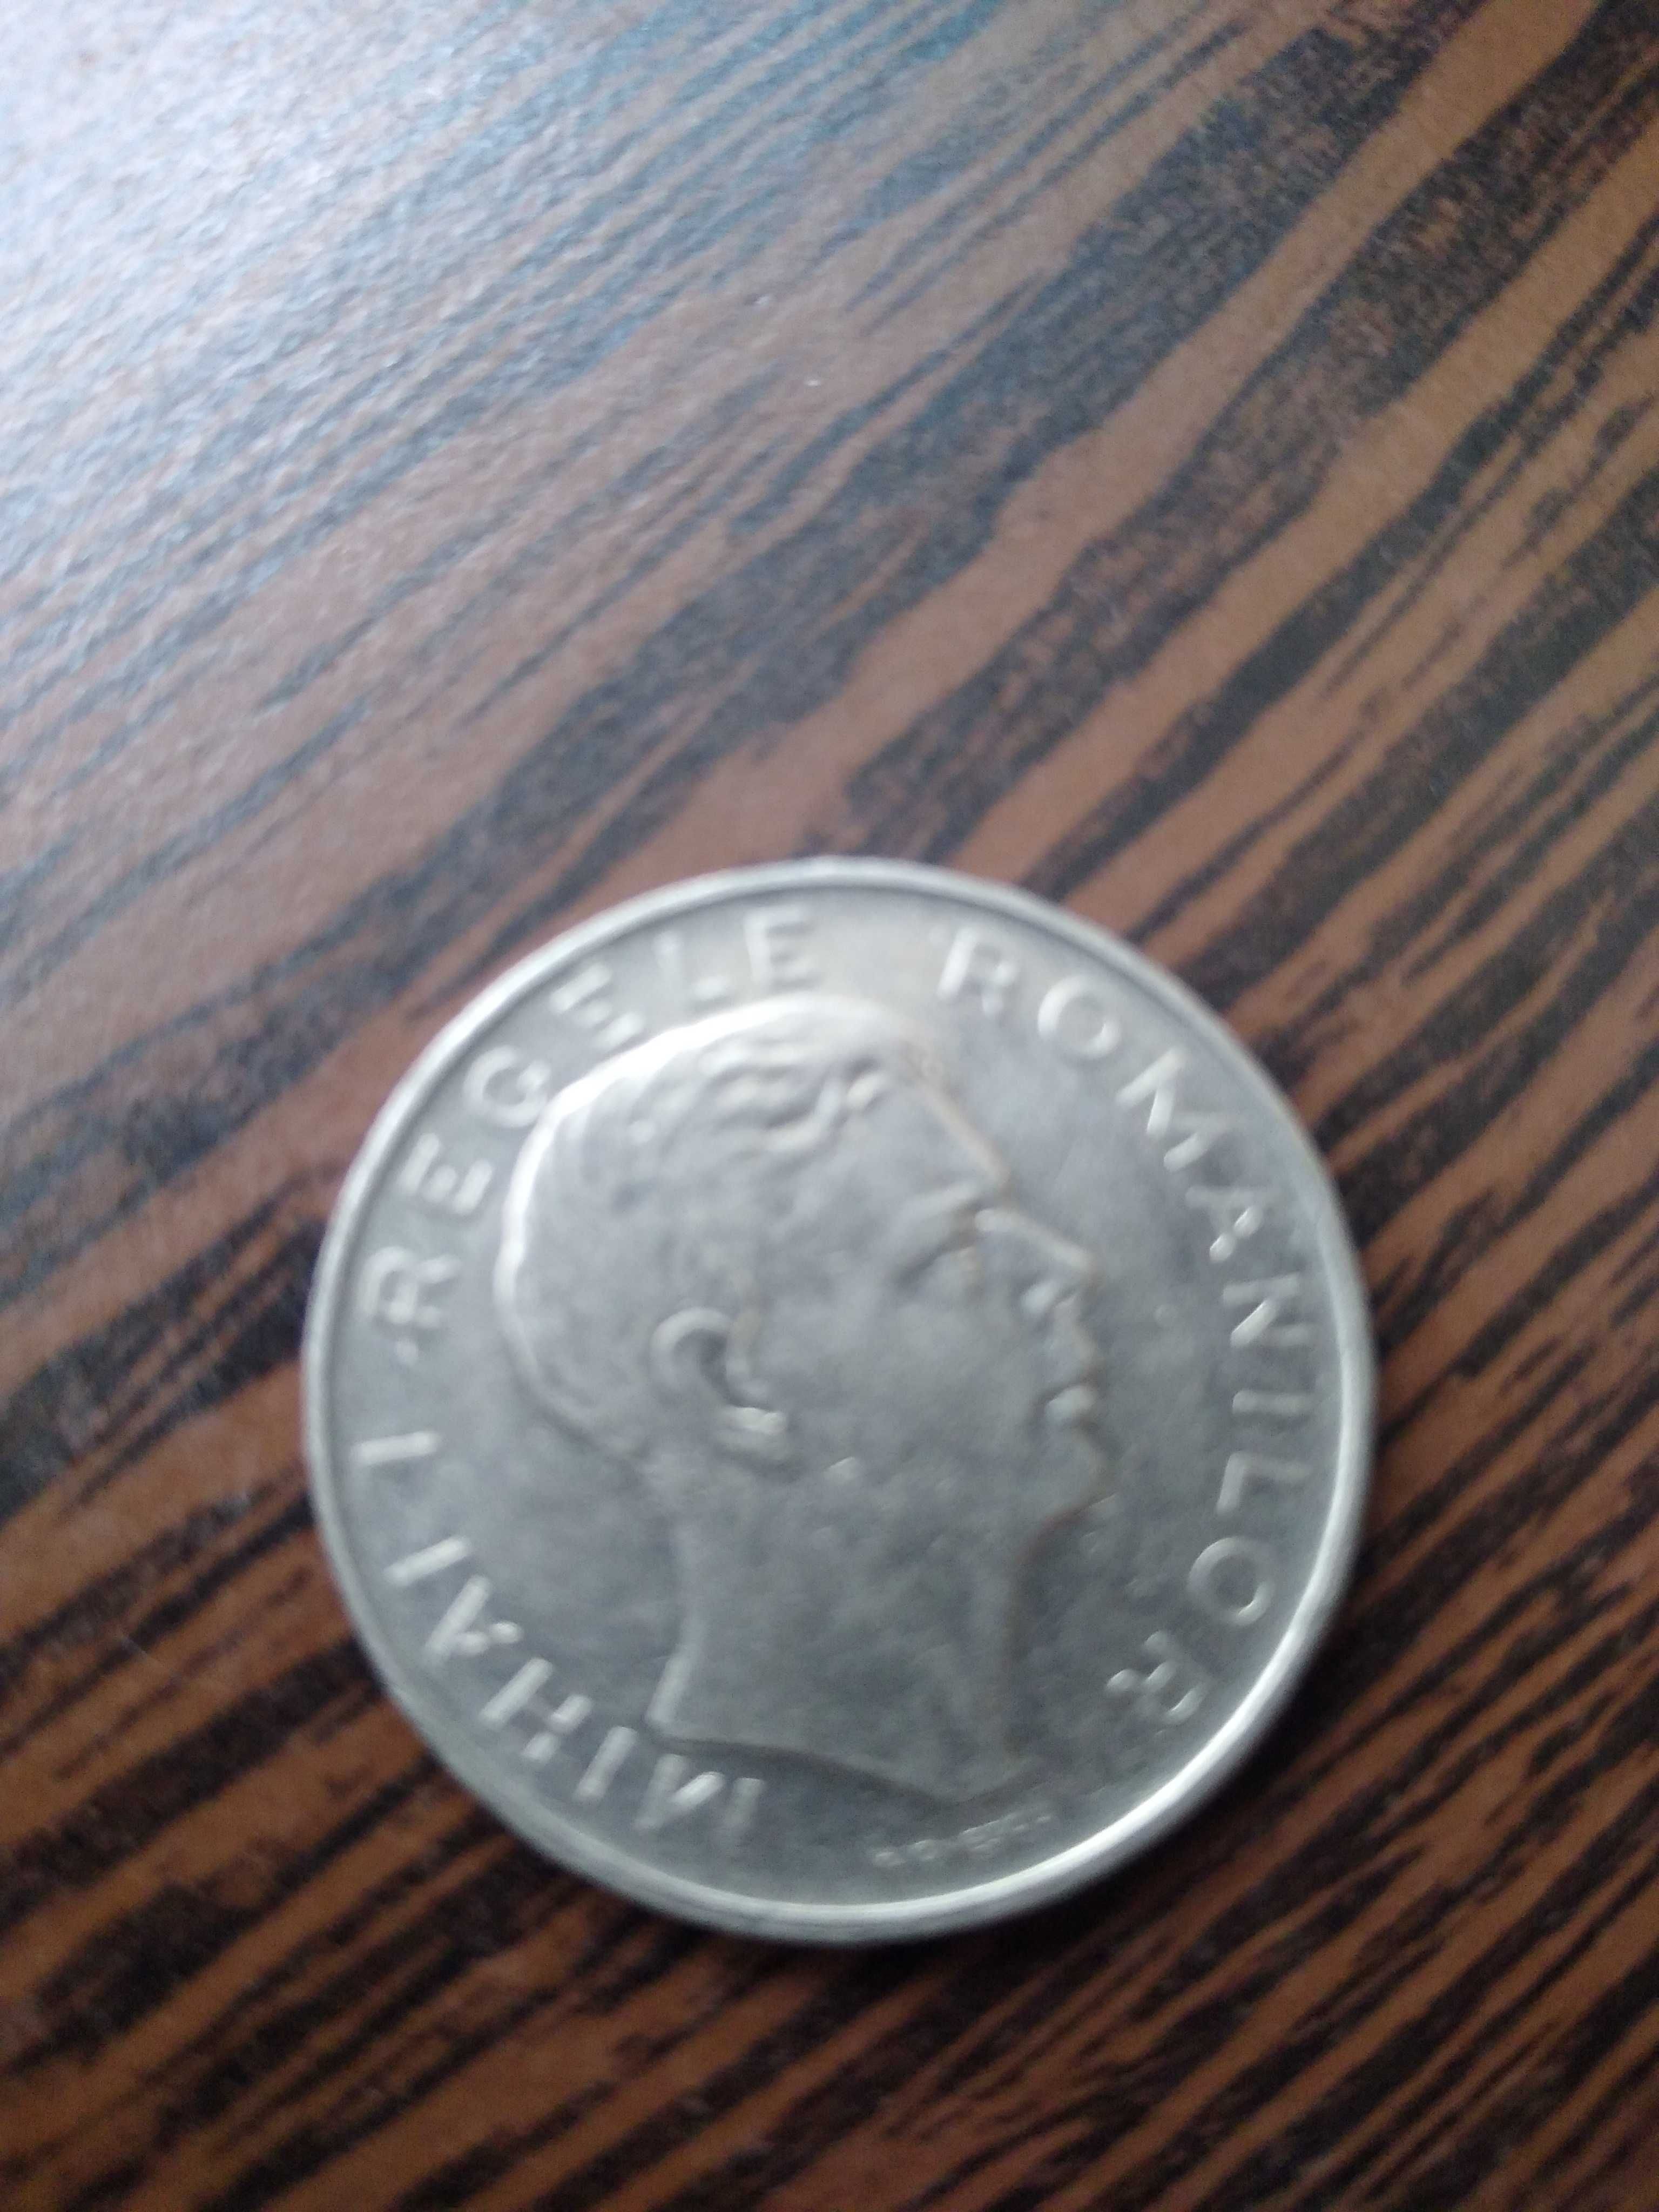 3 monede valoroase, an emitere 1914, 1943 respectiv 1944